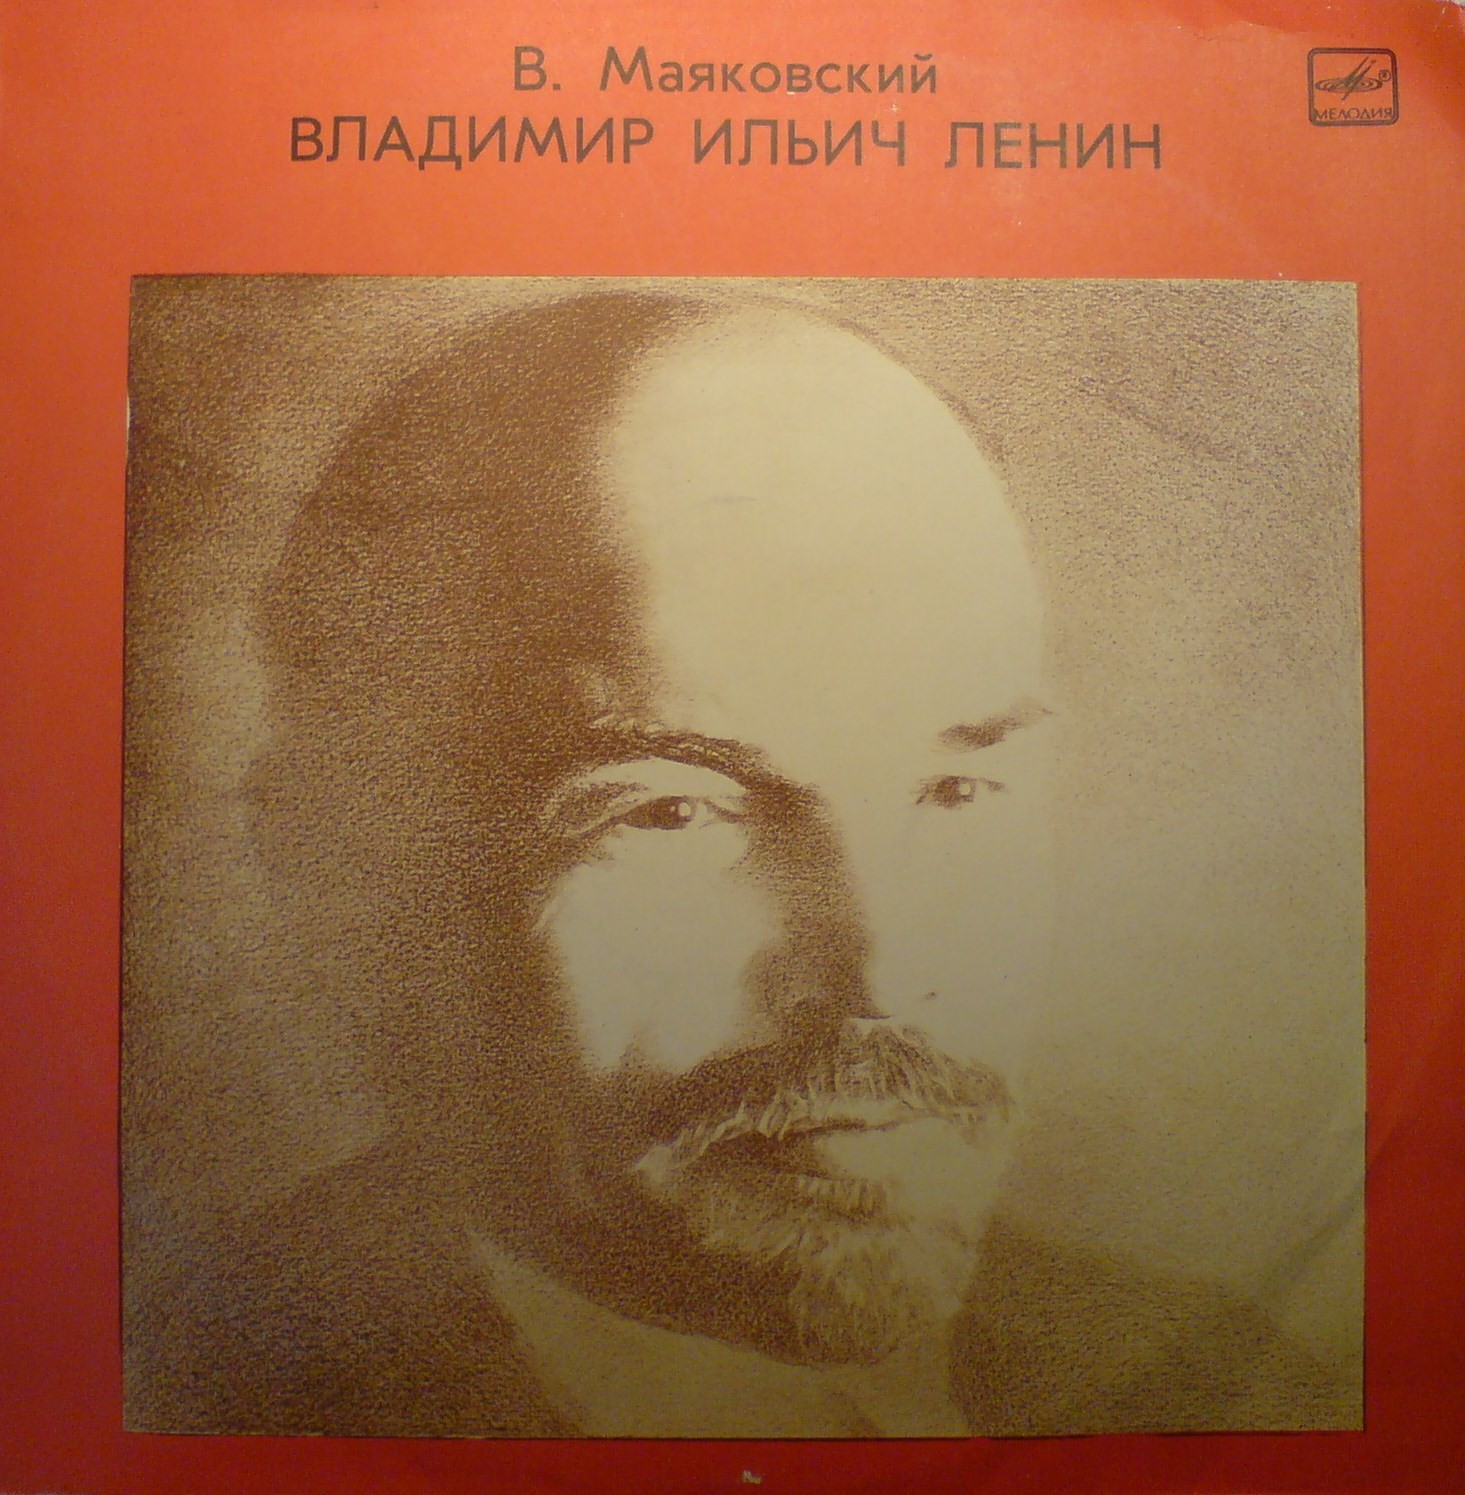 В. Маяковский - Владимир Ильич Ленин, поэма.